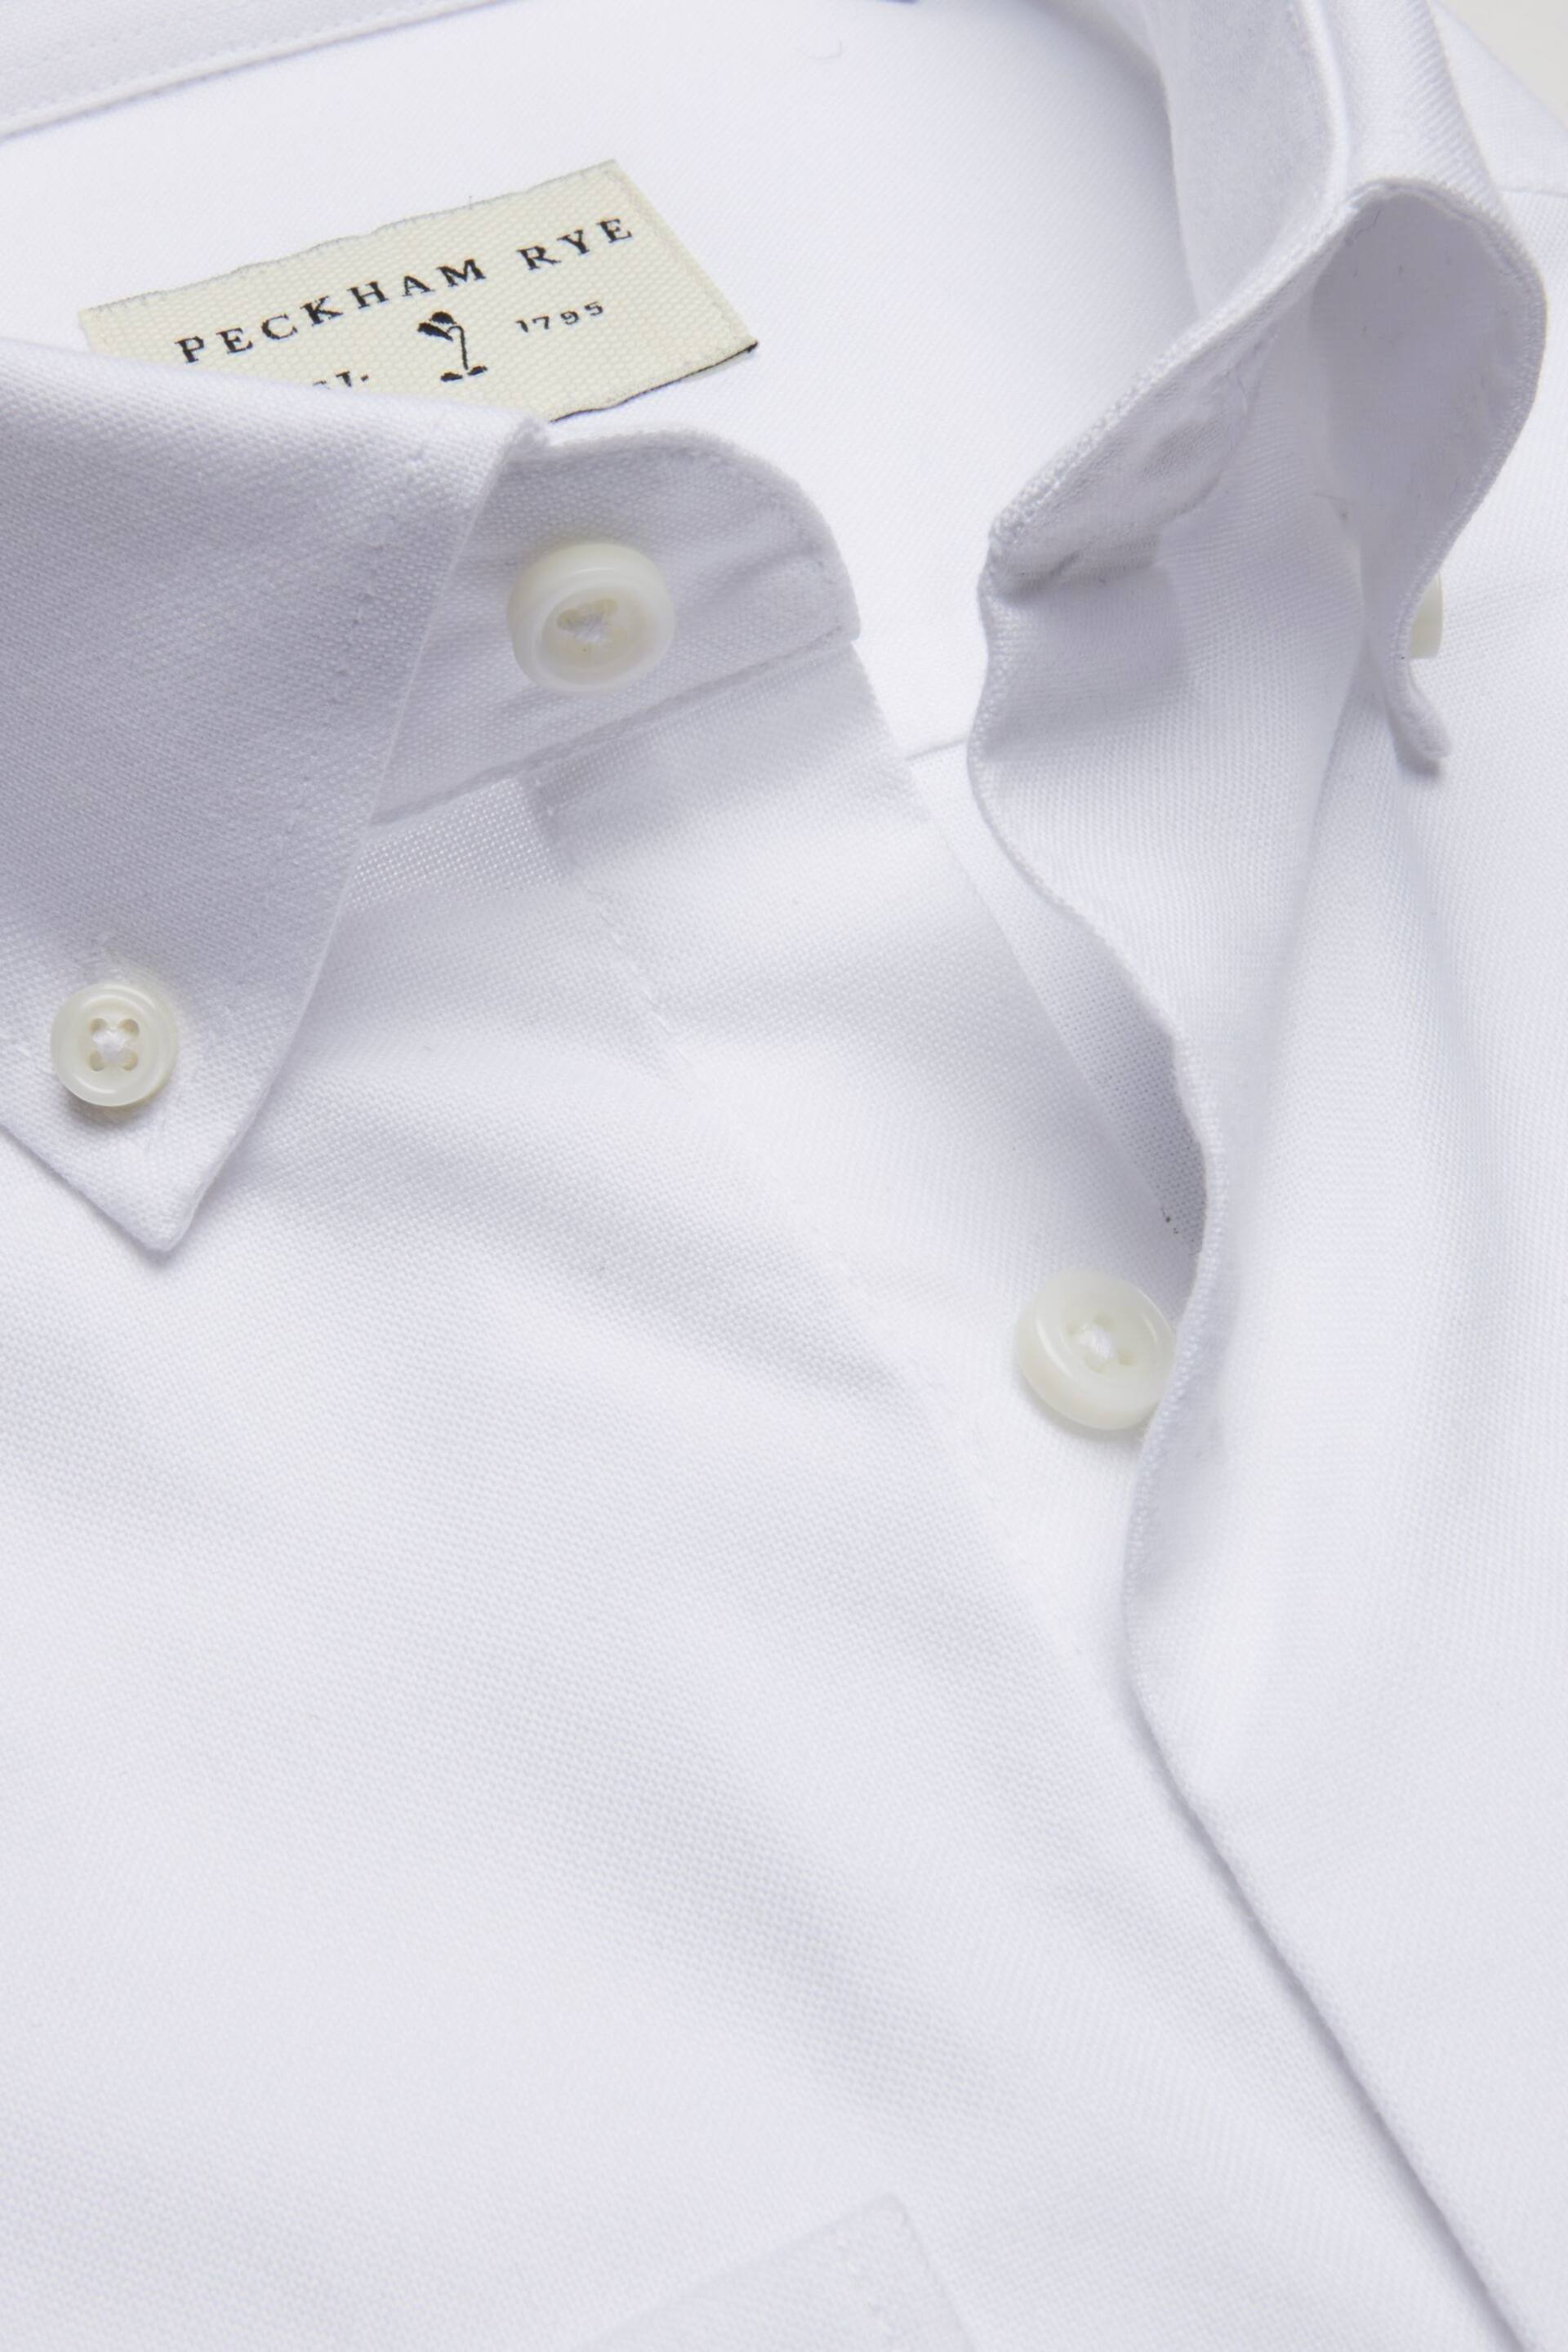 Peckham Rye Oxford Long Sleeve Shirt - Image 6 of 7